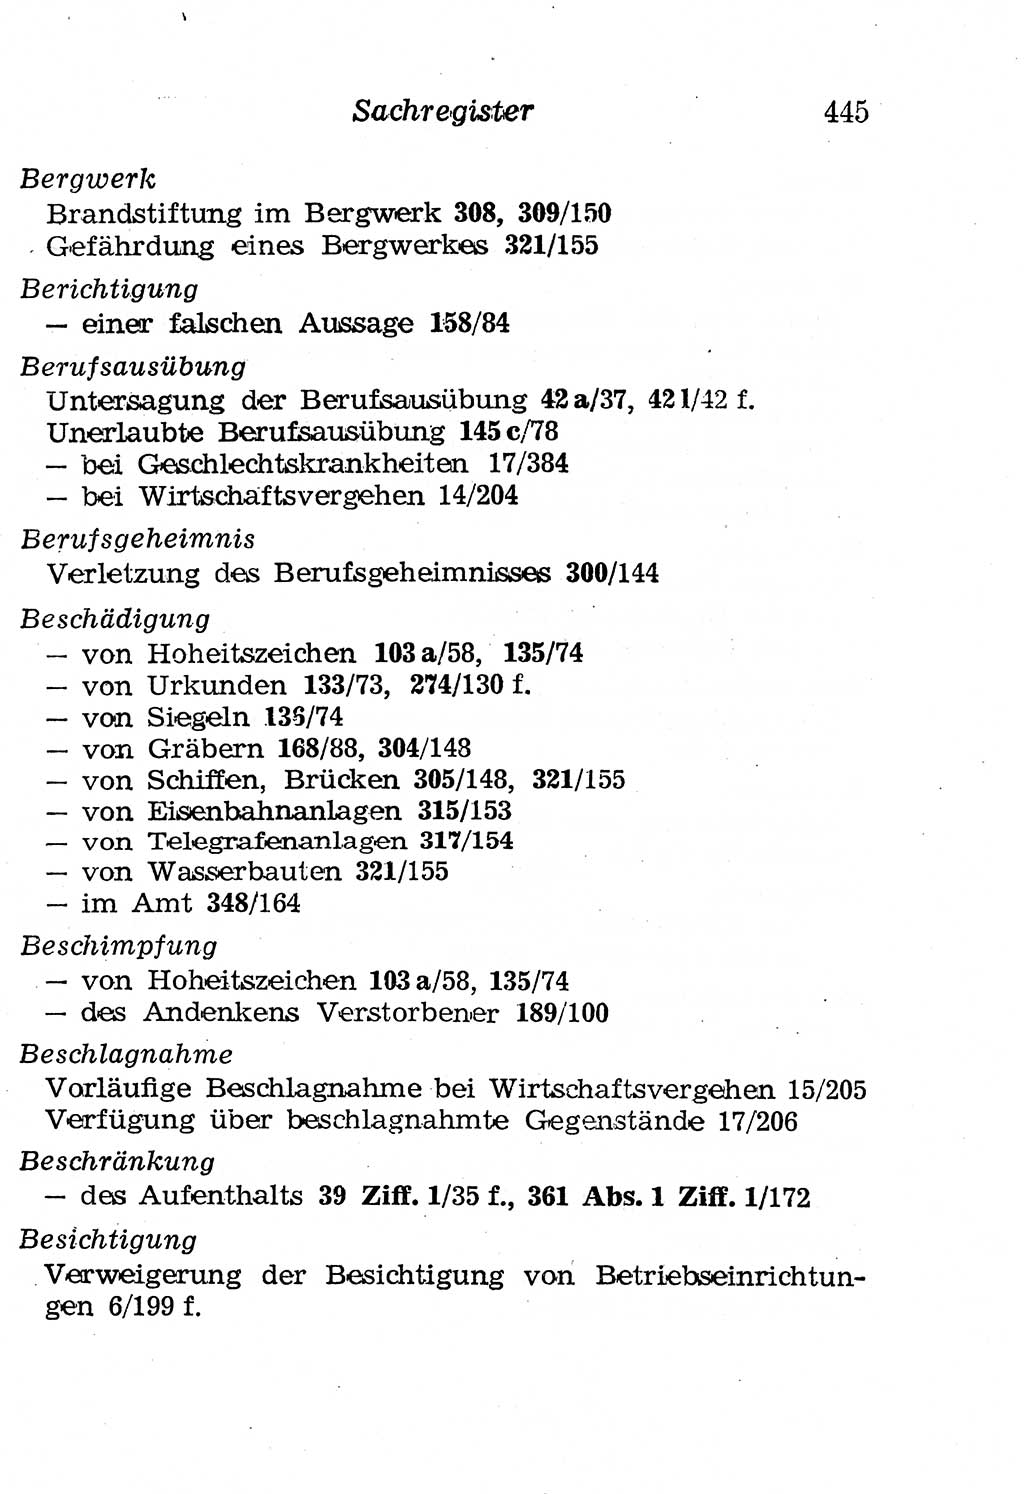 Strafgesetzbuch (StGB) und andere Strafgesetze [Deutsche Demokratische Republik (DDR)] 1958, Seite 445 (StGB Strafges. DDR 1958, S. 445)